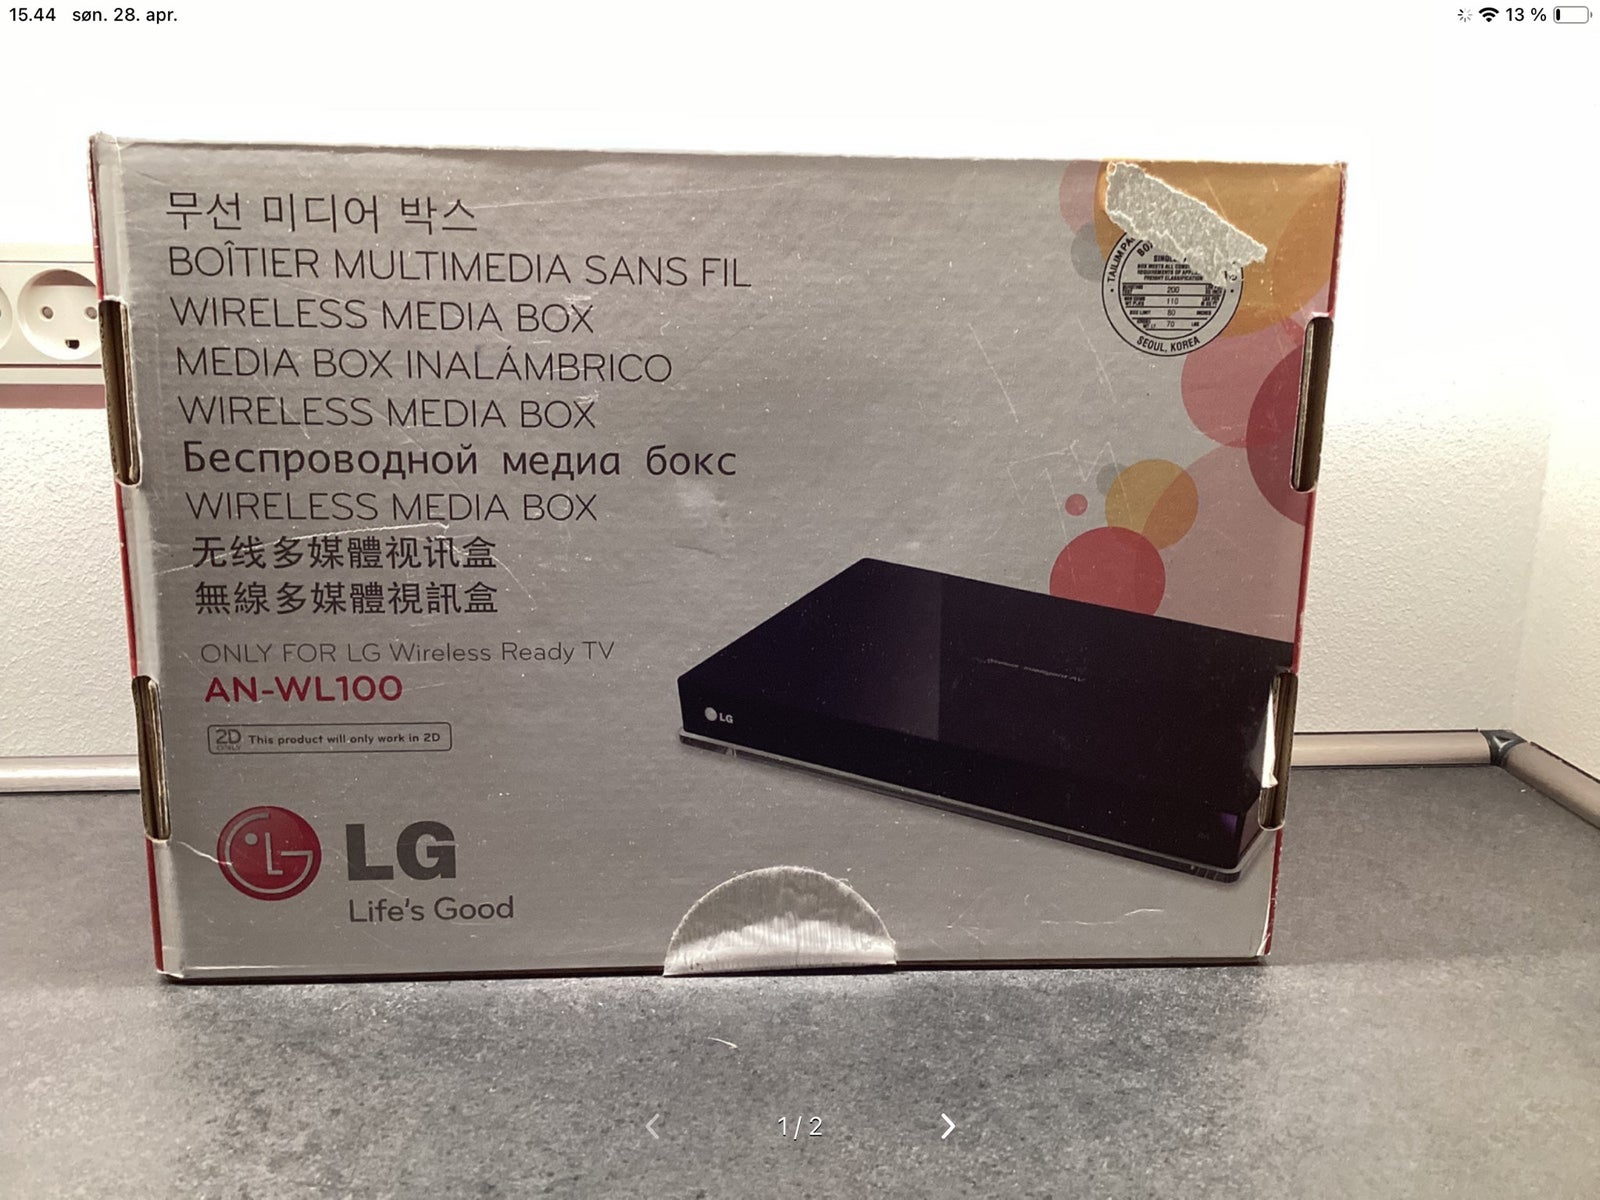 Wireless Media Box, LG, AN-WL 100